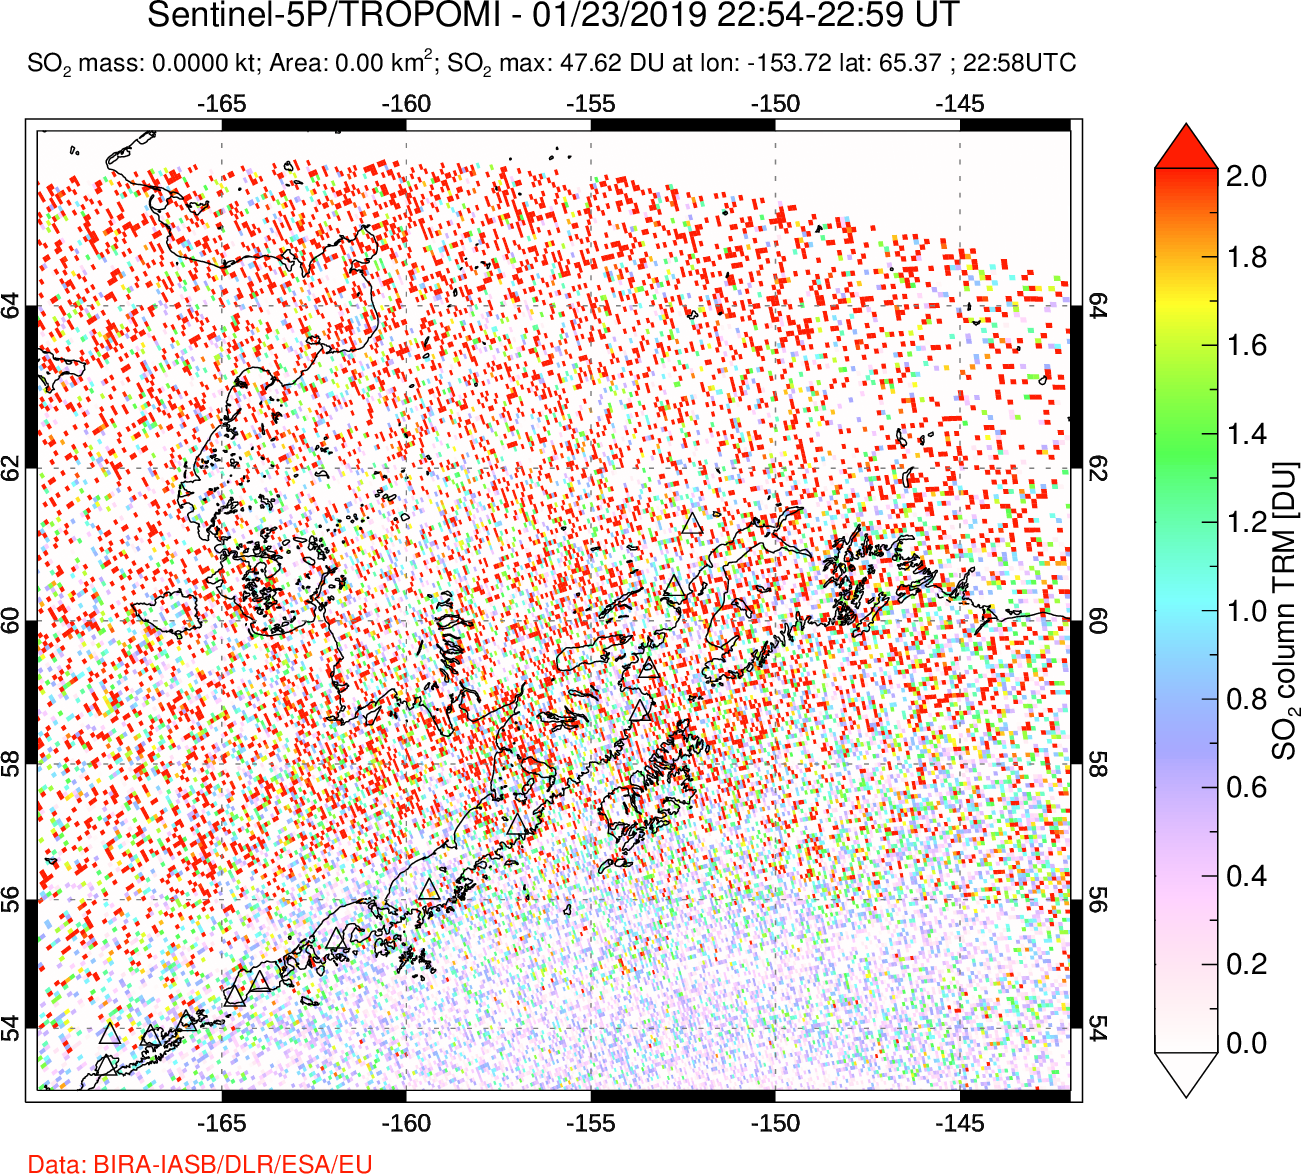 A sulfur dioxide image over Alaska, USA on Jan 23, 2019.